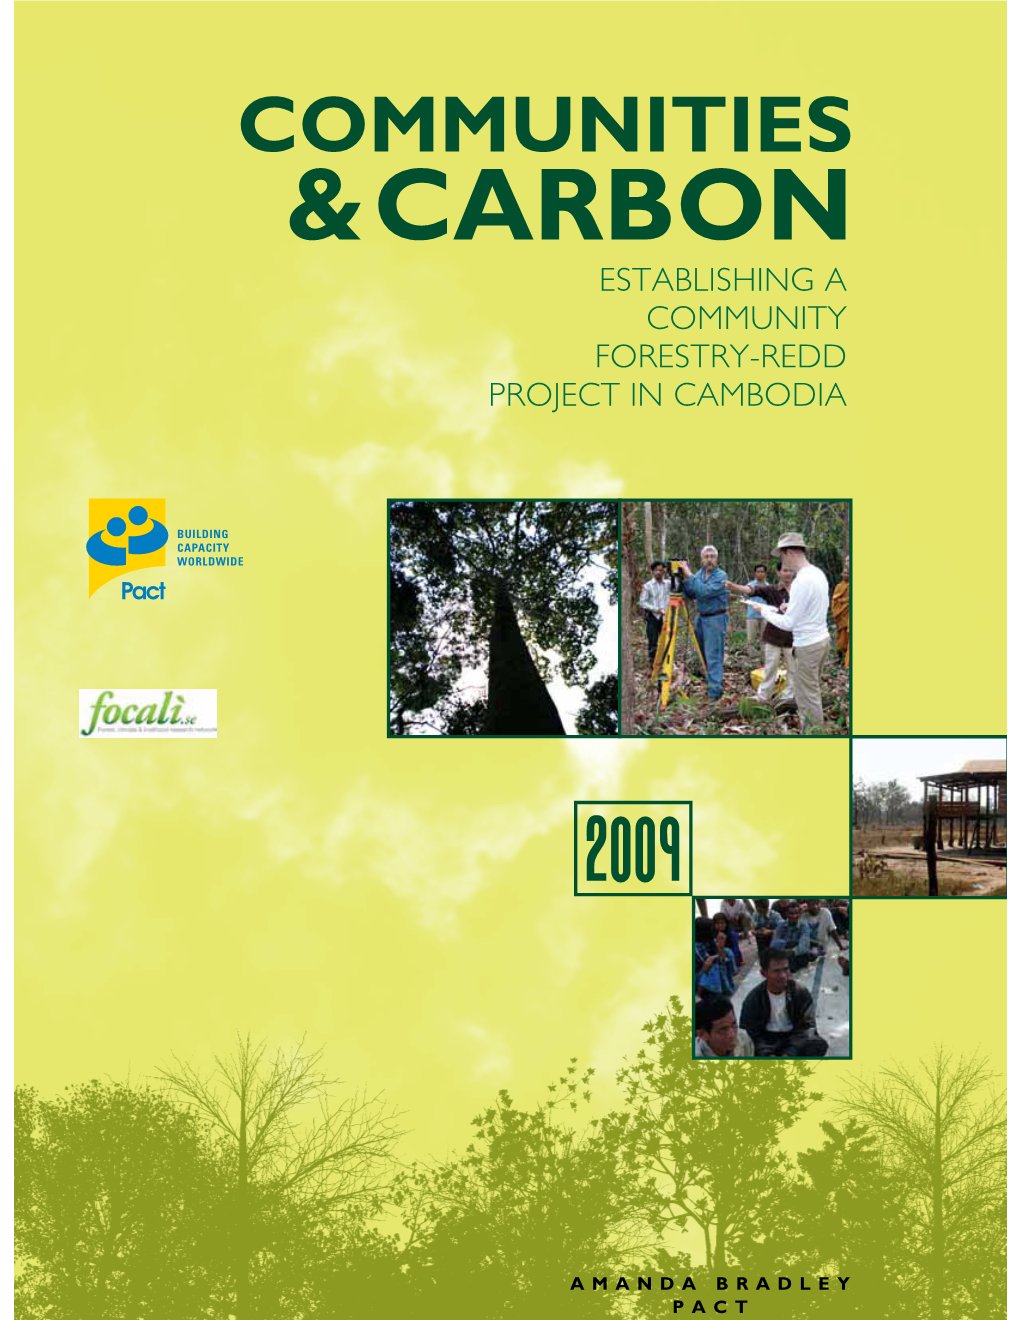 Carbon, Establishing a Community Forestry Redd Project in Cambodia Communities &Carbon Establishing a Community Forestry-Redd Project in Cambodia